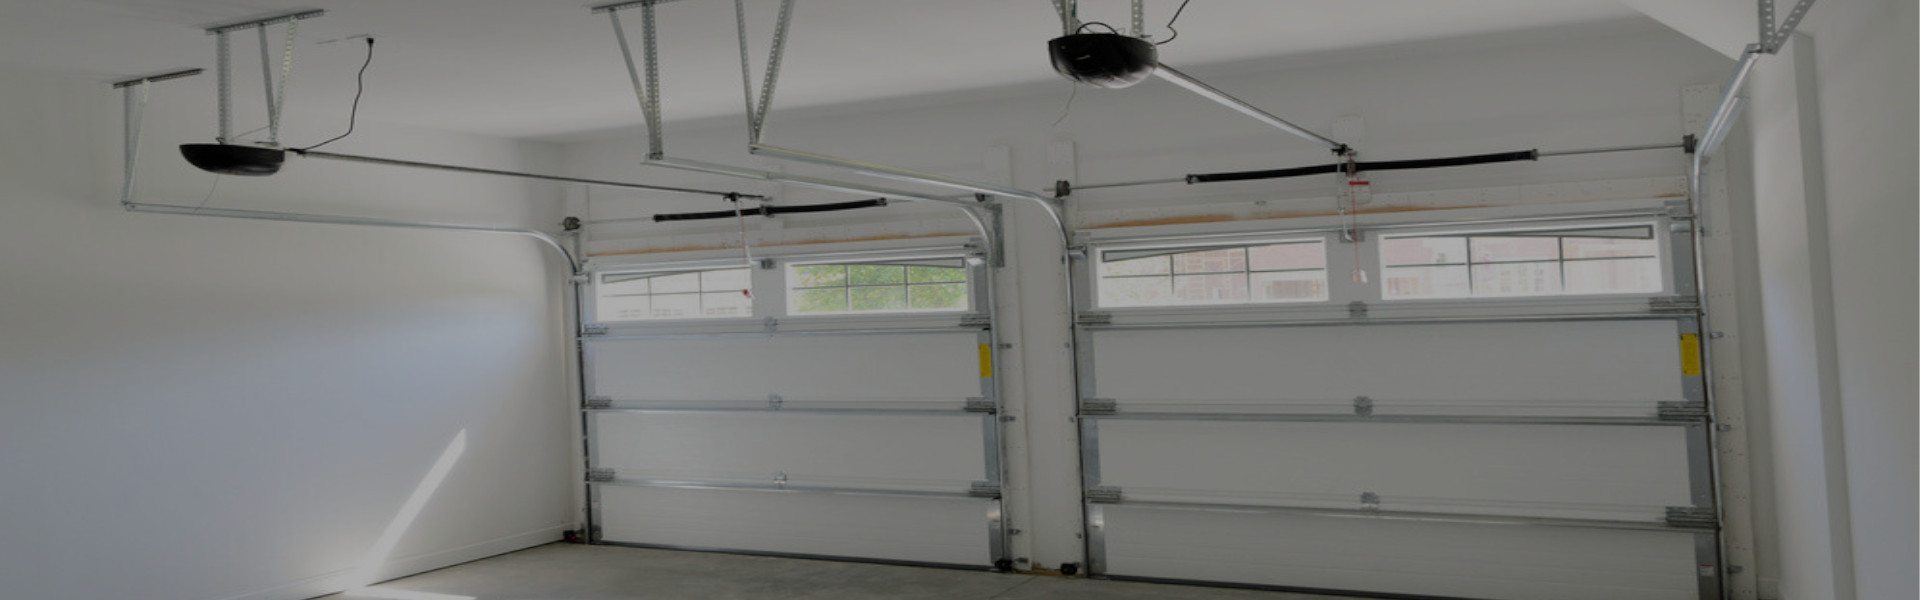 Slider Garage Door Repair, Glaziers in Walthamstow, E17